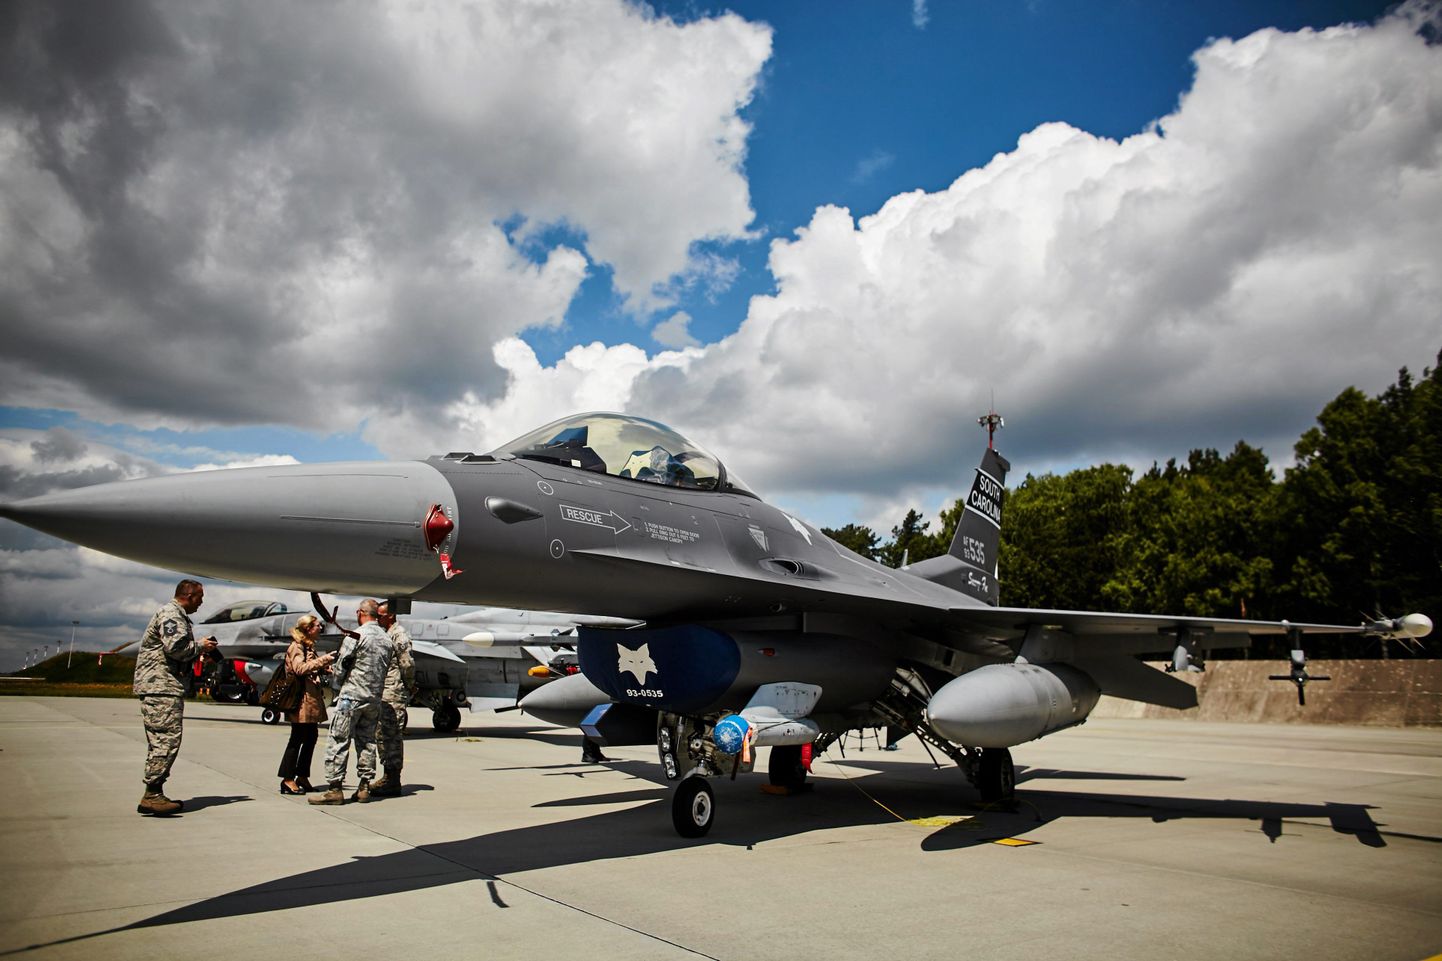 Balti riikide õhuruumi valvavad Poola sõjalennukid F-16 Fighting Falcon.